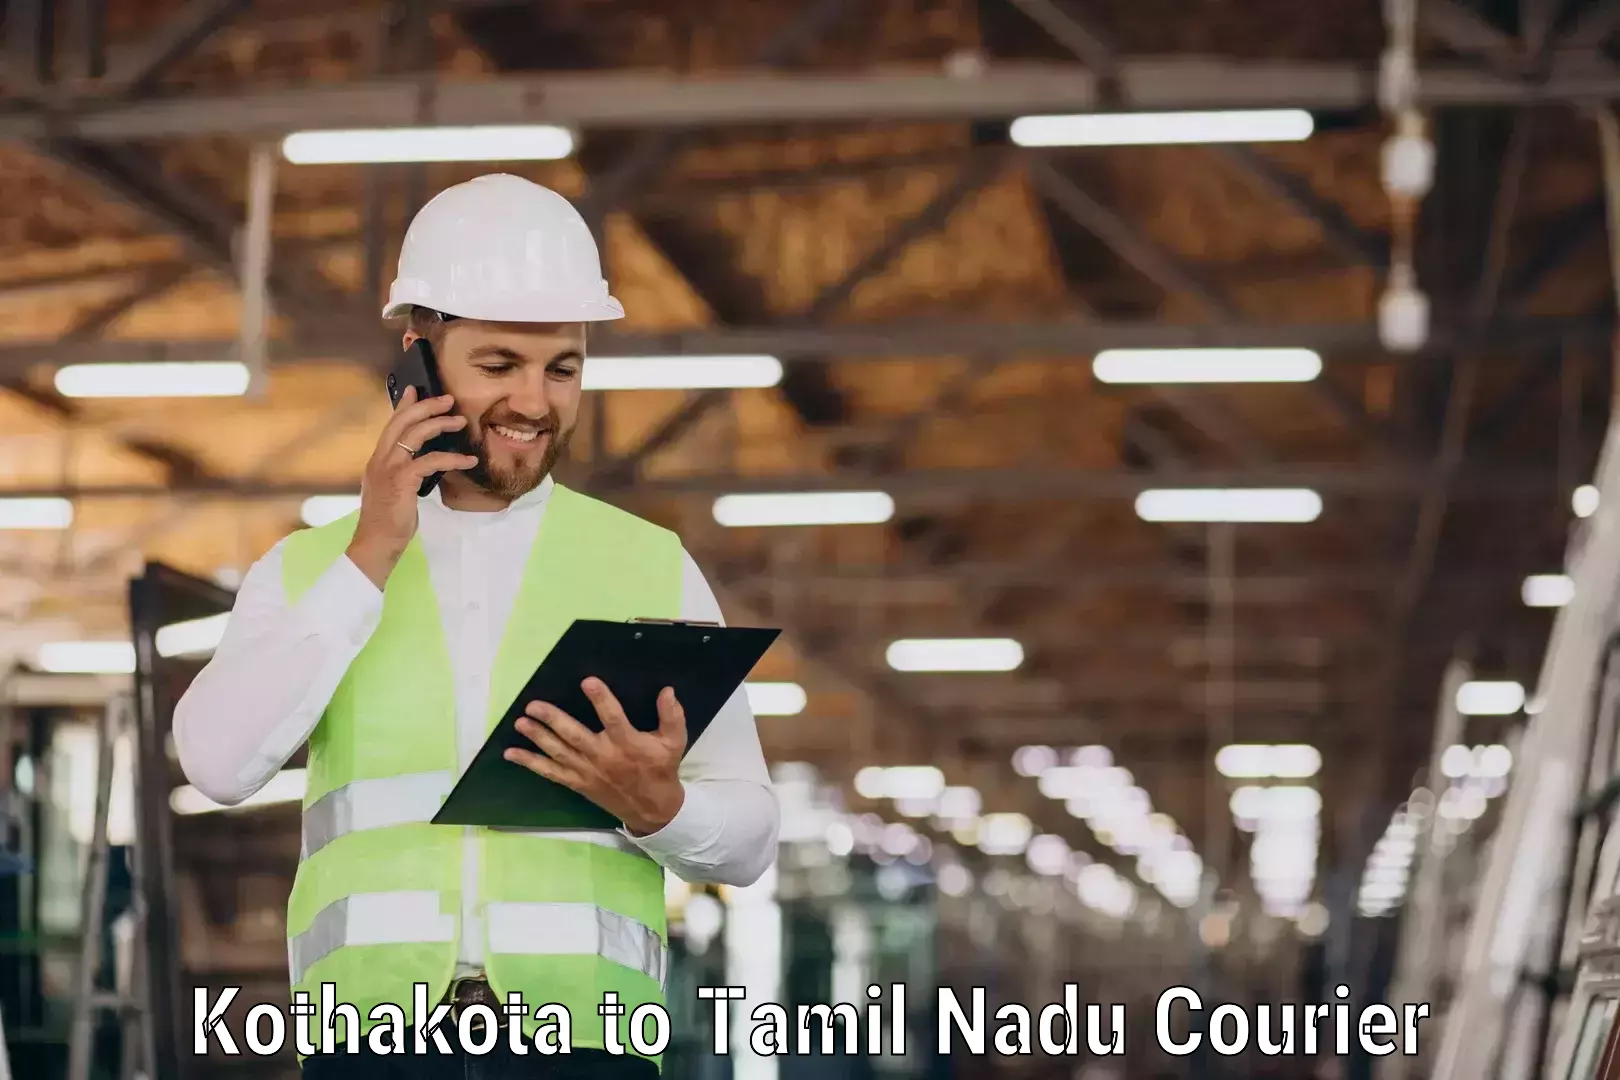 Efficient shipping platforms Kothakota to Tamil Nadu